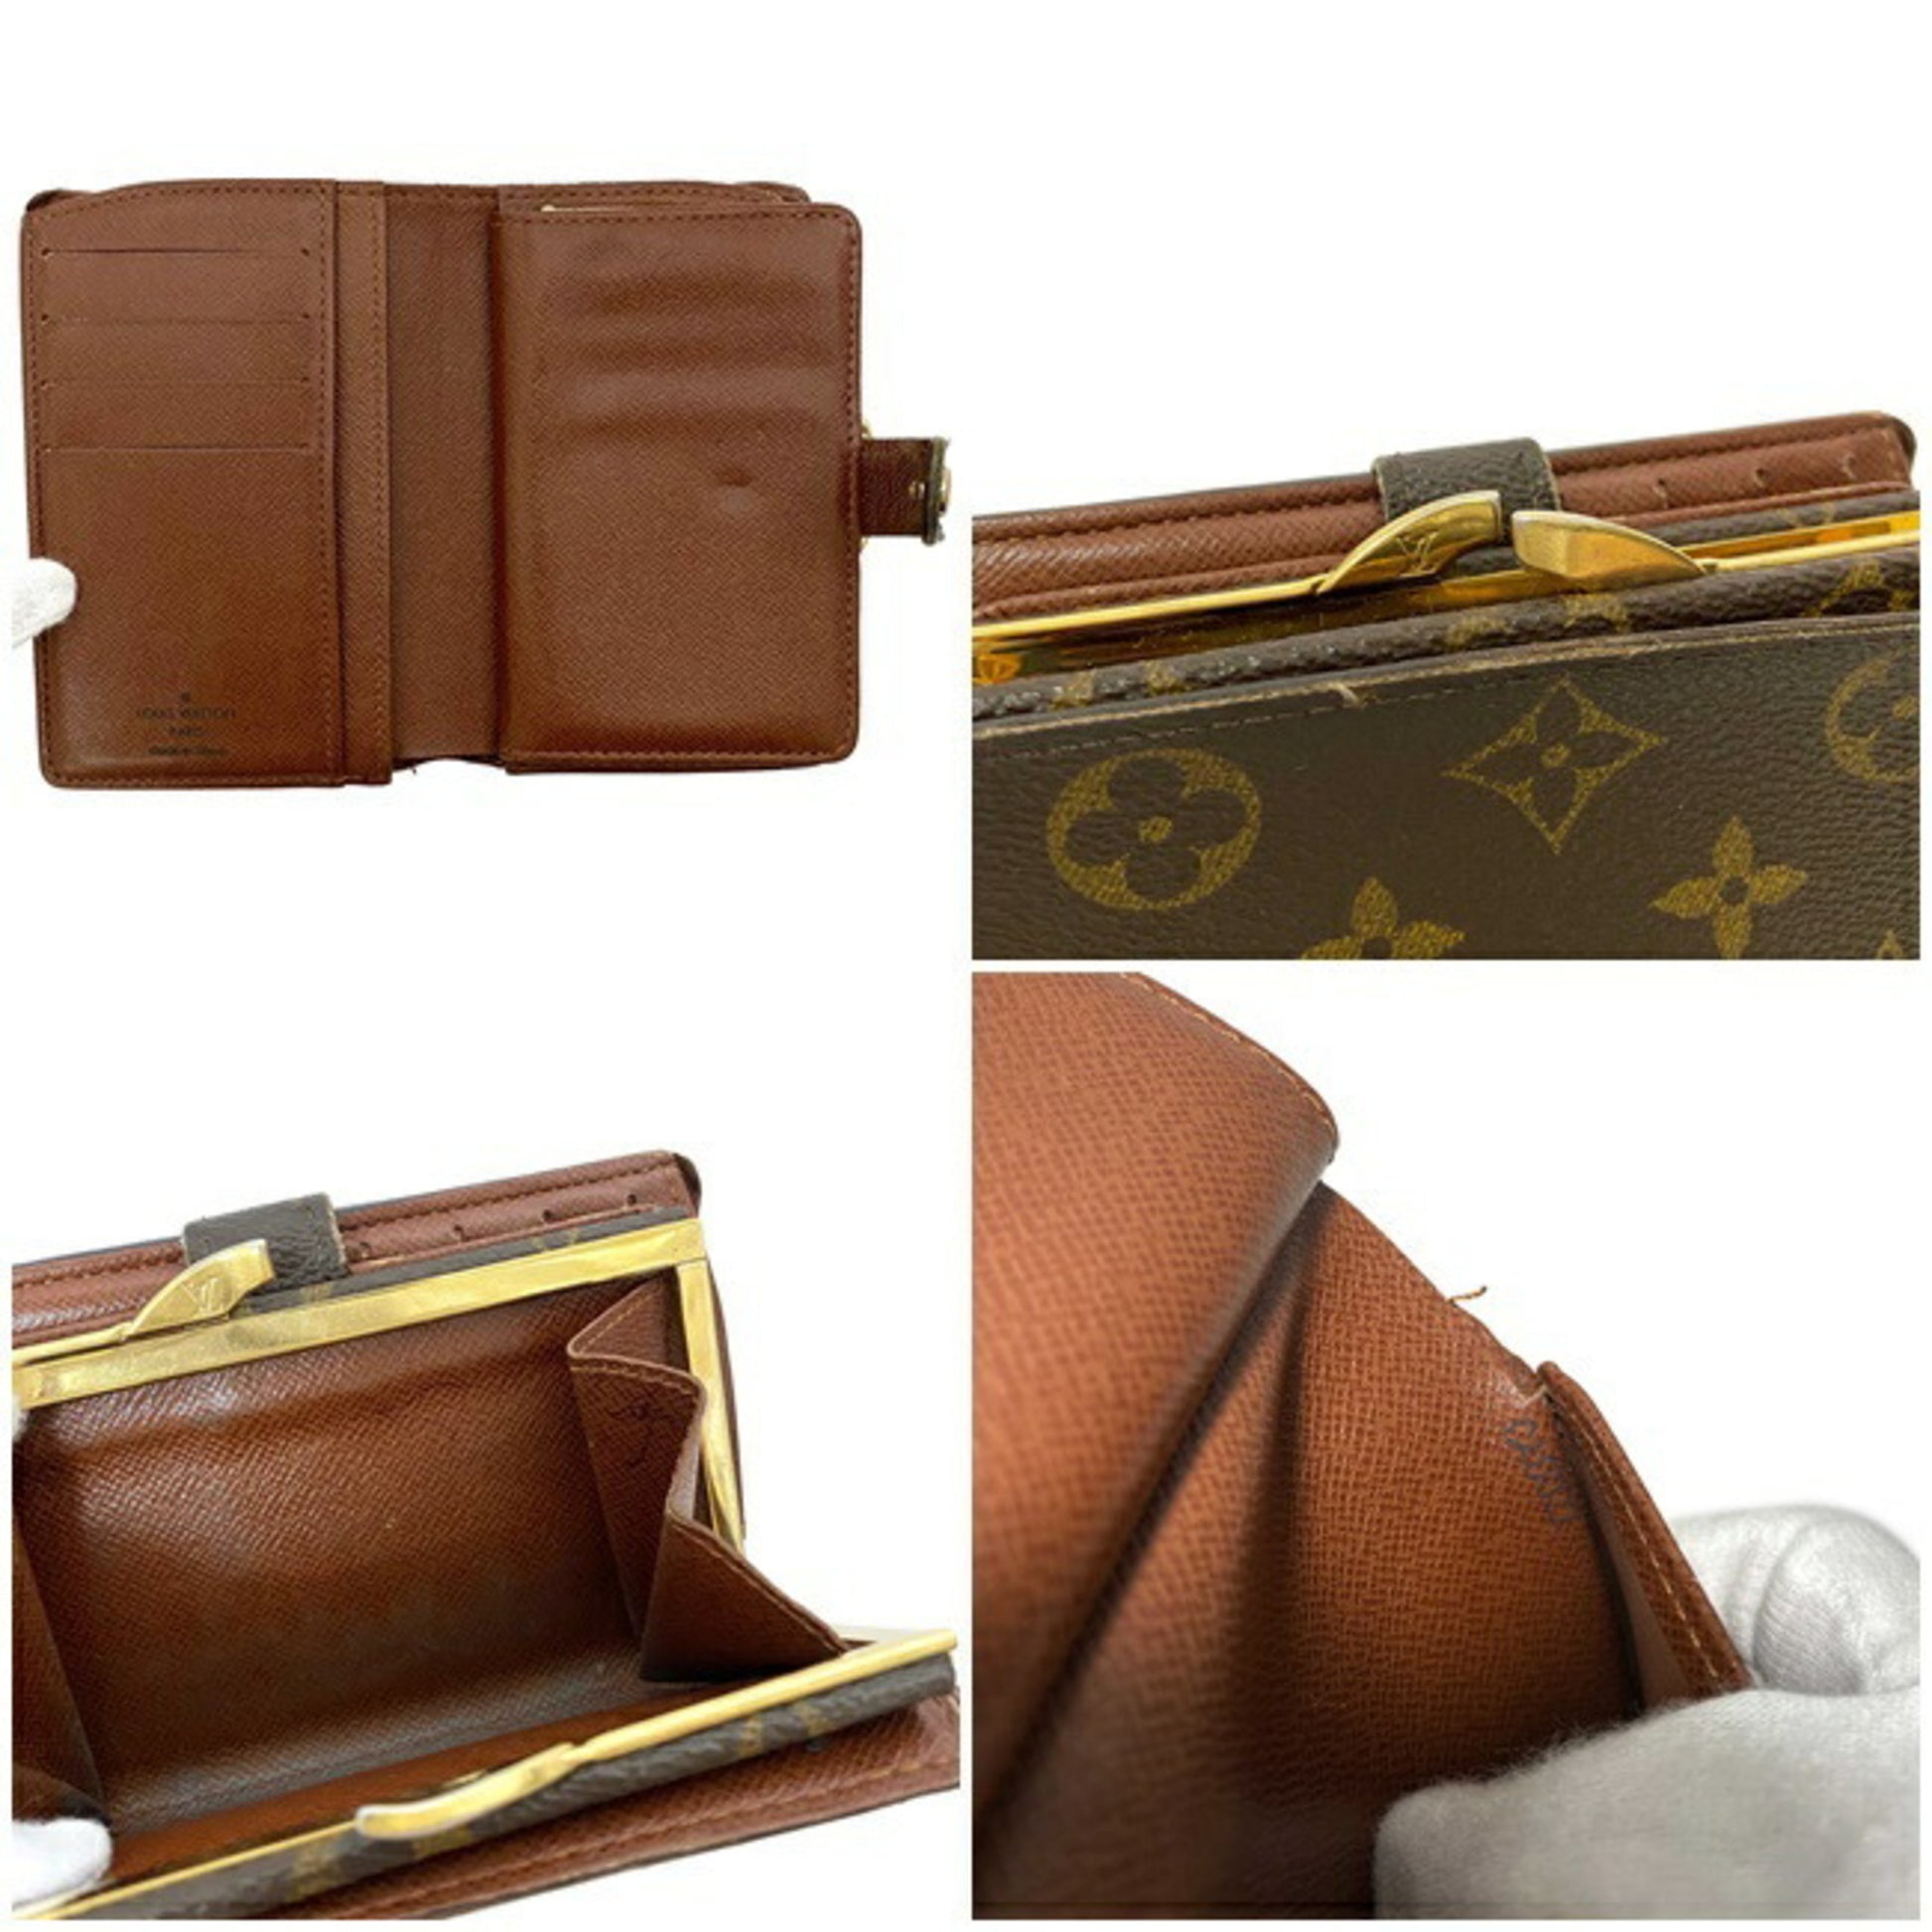 Louis Vuitton, Bags, Louis Vuitton Monogram Portefeuille Viennois Wallet  M6674 Lv 9114f